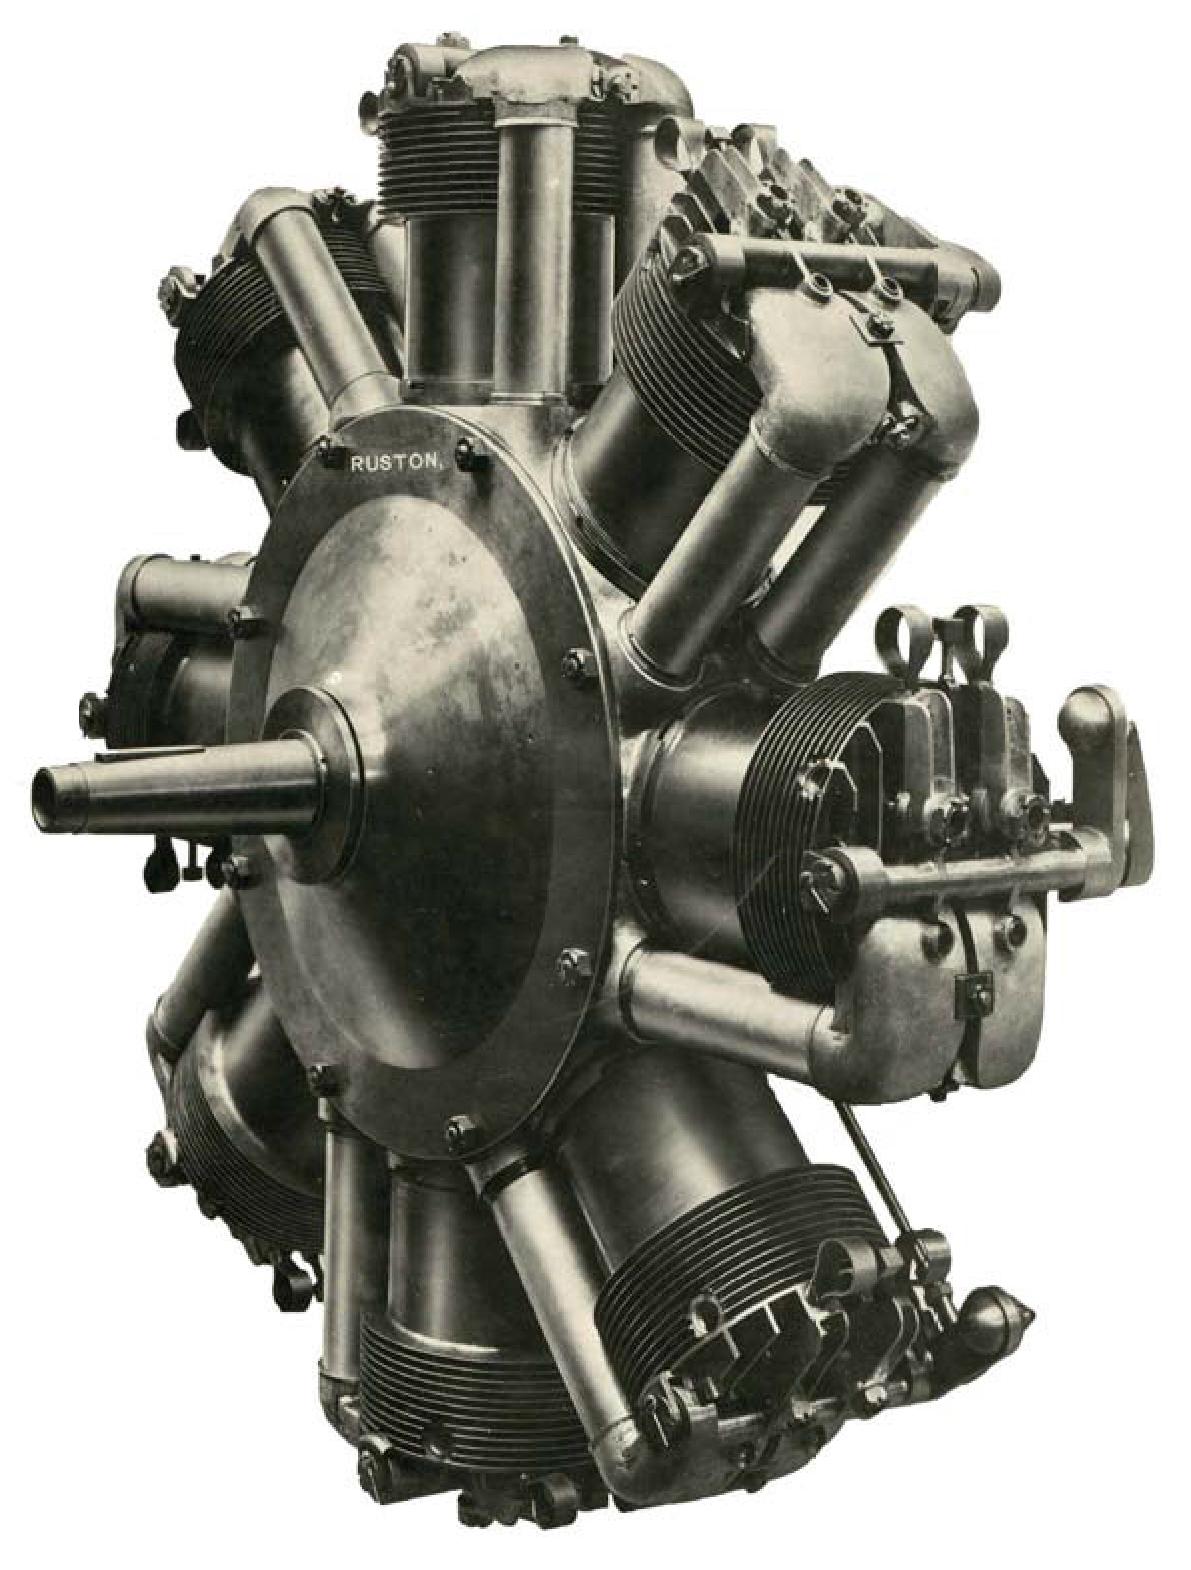 Восьмицилиндровый шеститактный ротативный редукторный двигатель Ruston Proctor. Великобритания